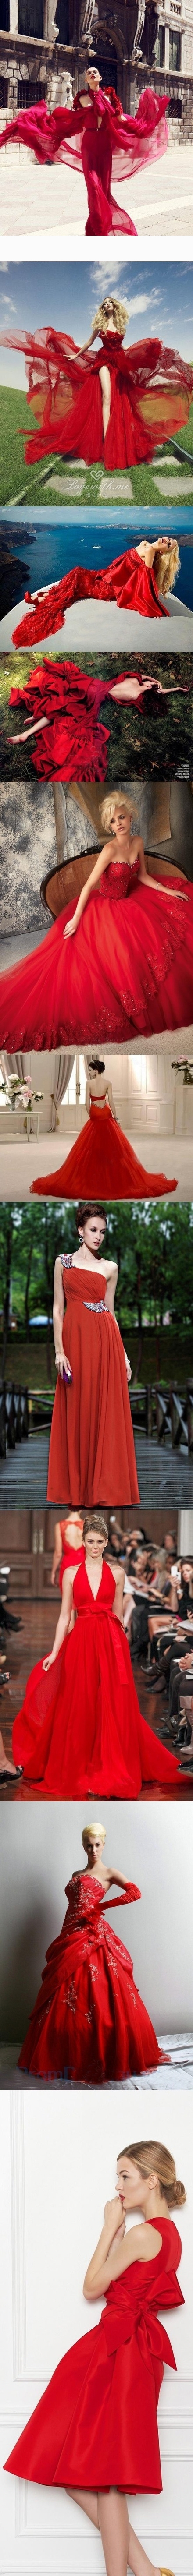 #婚纱礼服# 富贵迷人、热情洋溢的红色婚纱礼服